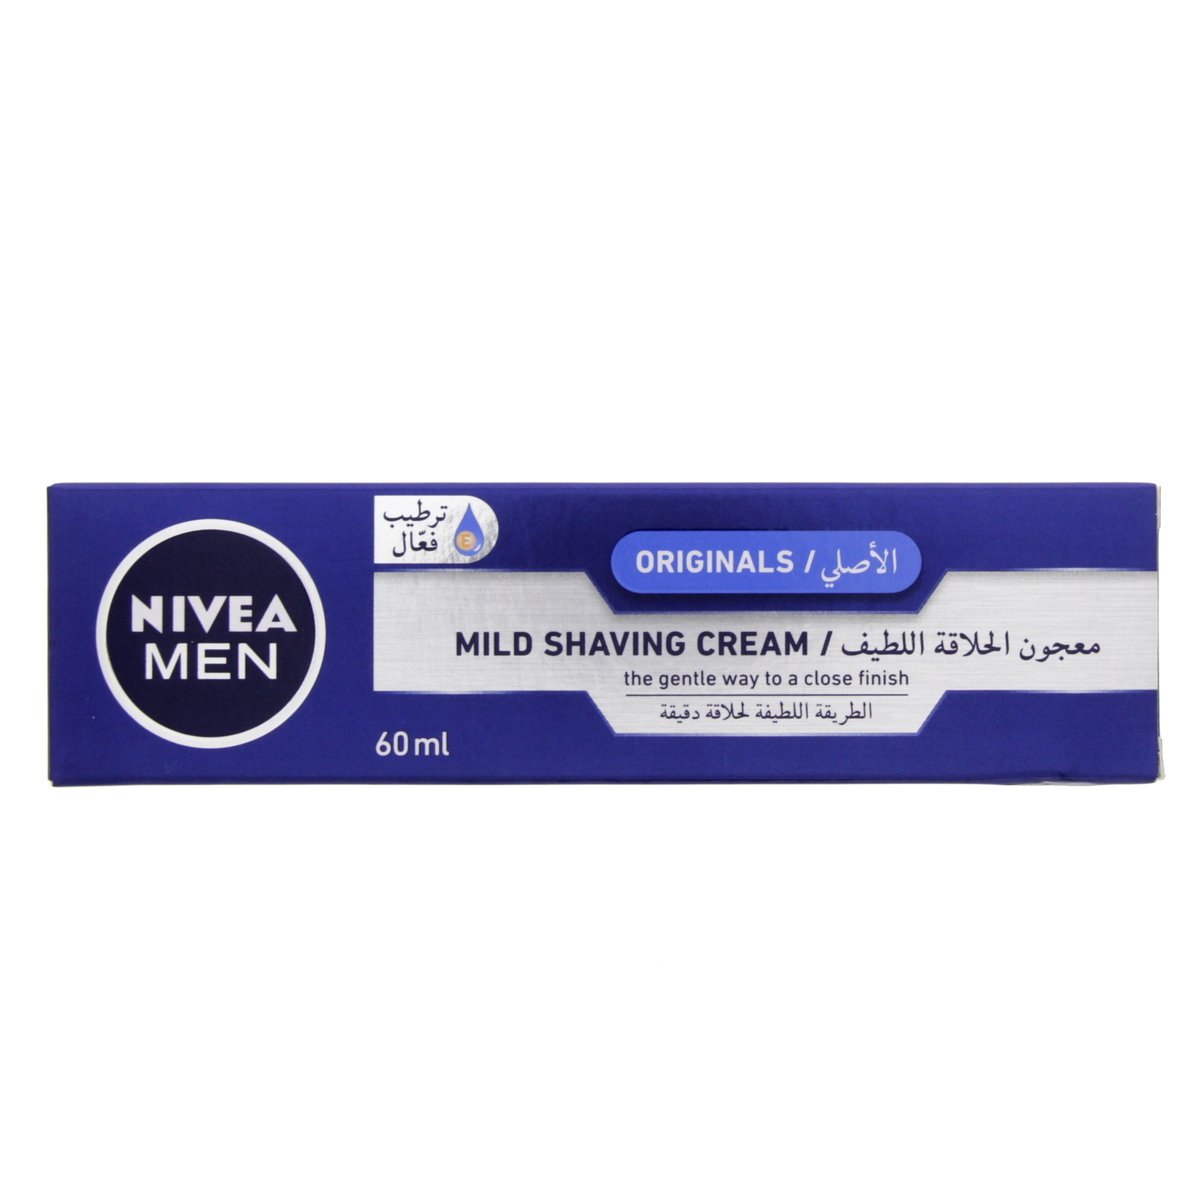 Buy Nivea Men Originals Mild Shaving Cream 60 ml Online at Best Price | Shaving Cream | Lulu Egypt in Saudi Arabia